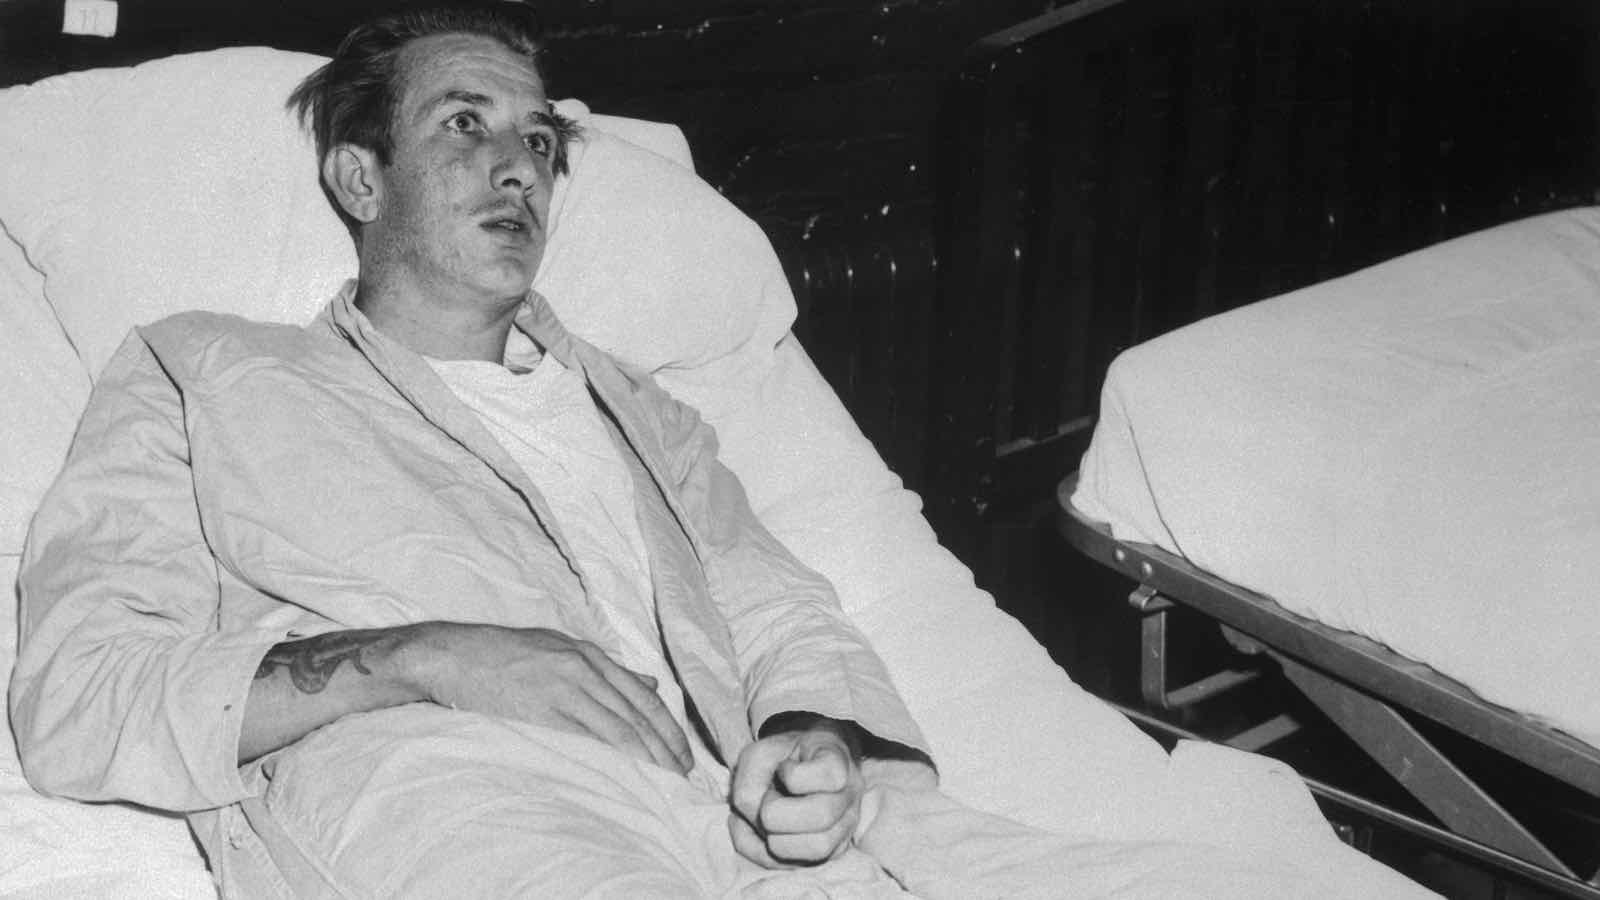 Richard Speck – O assassino que matou 8 enfermeiras em uma noite